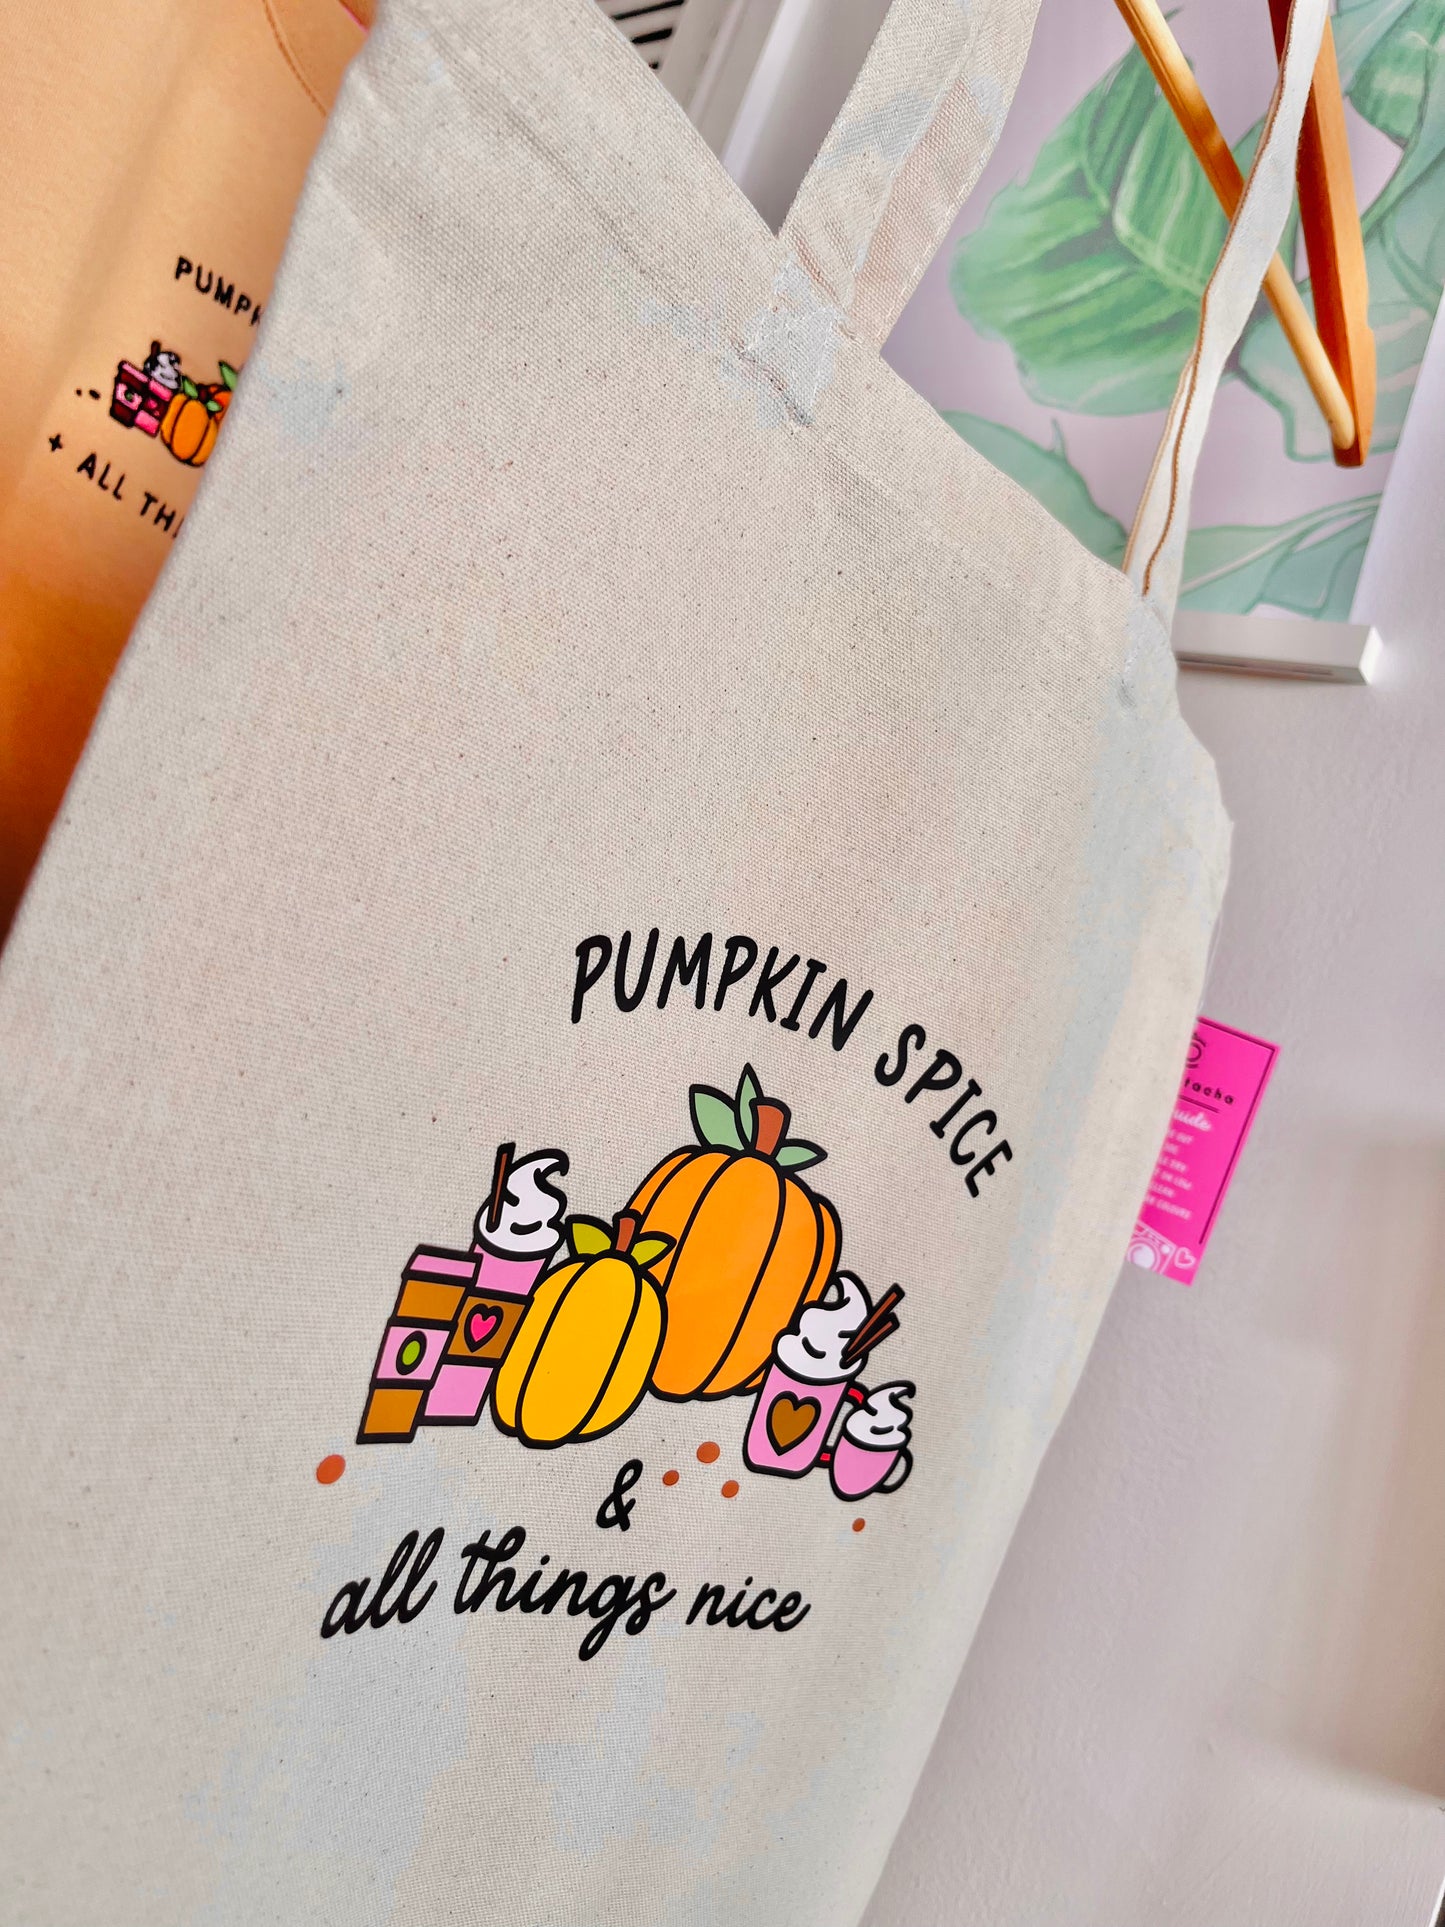 Pumpkin Spice Tote Bag